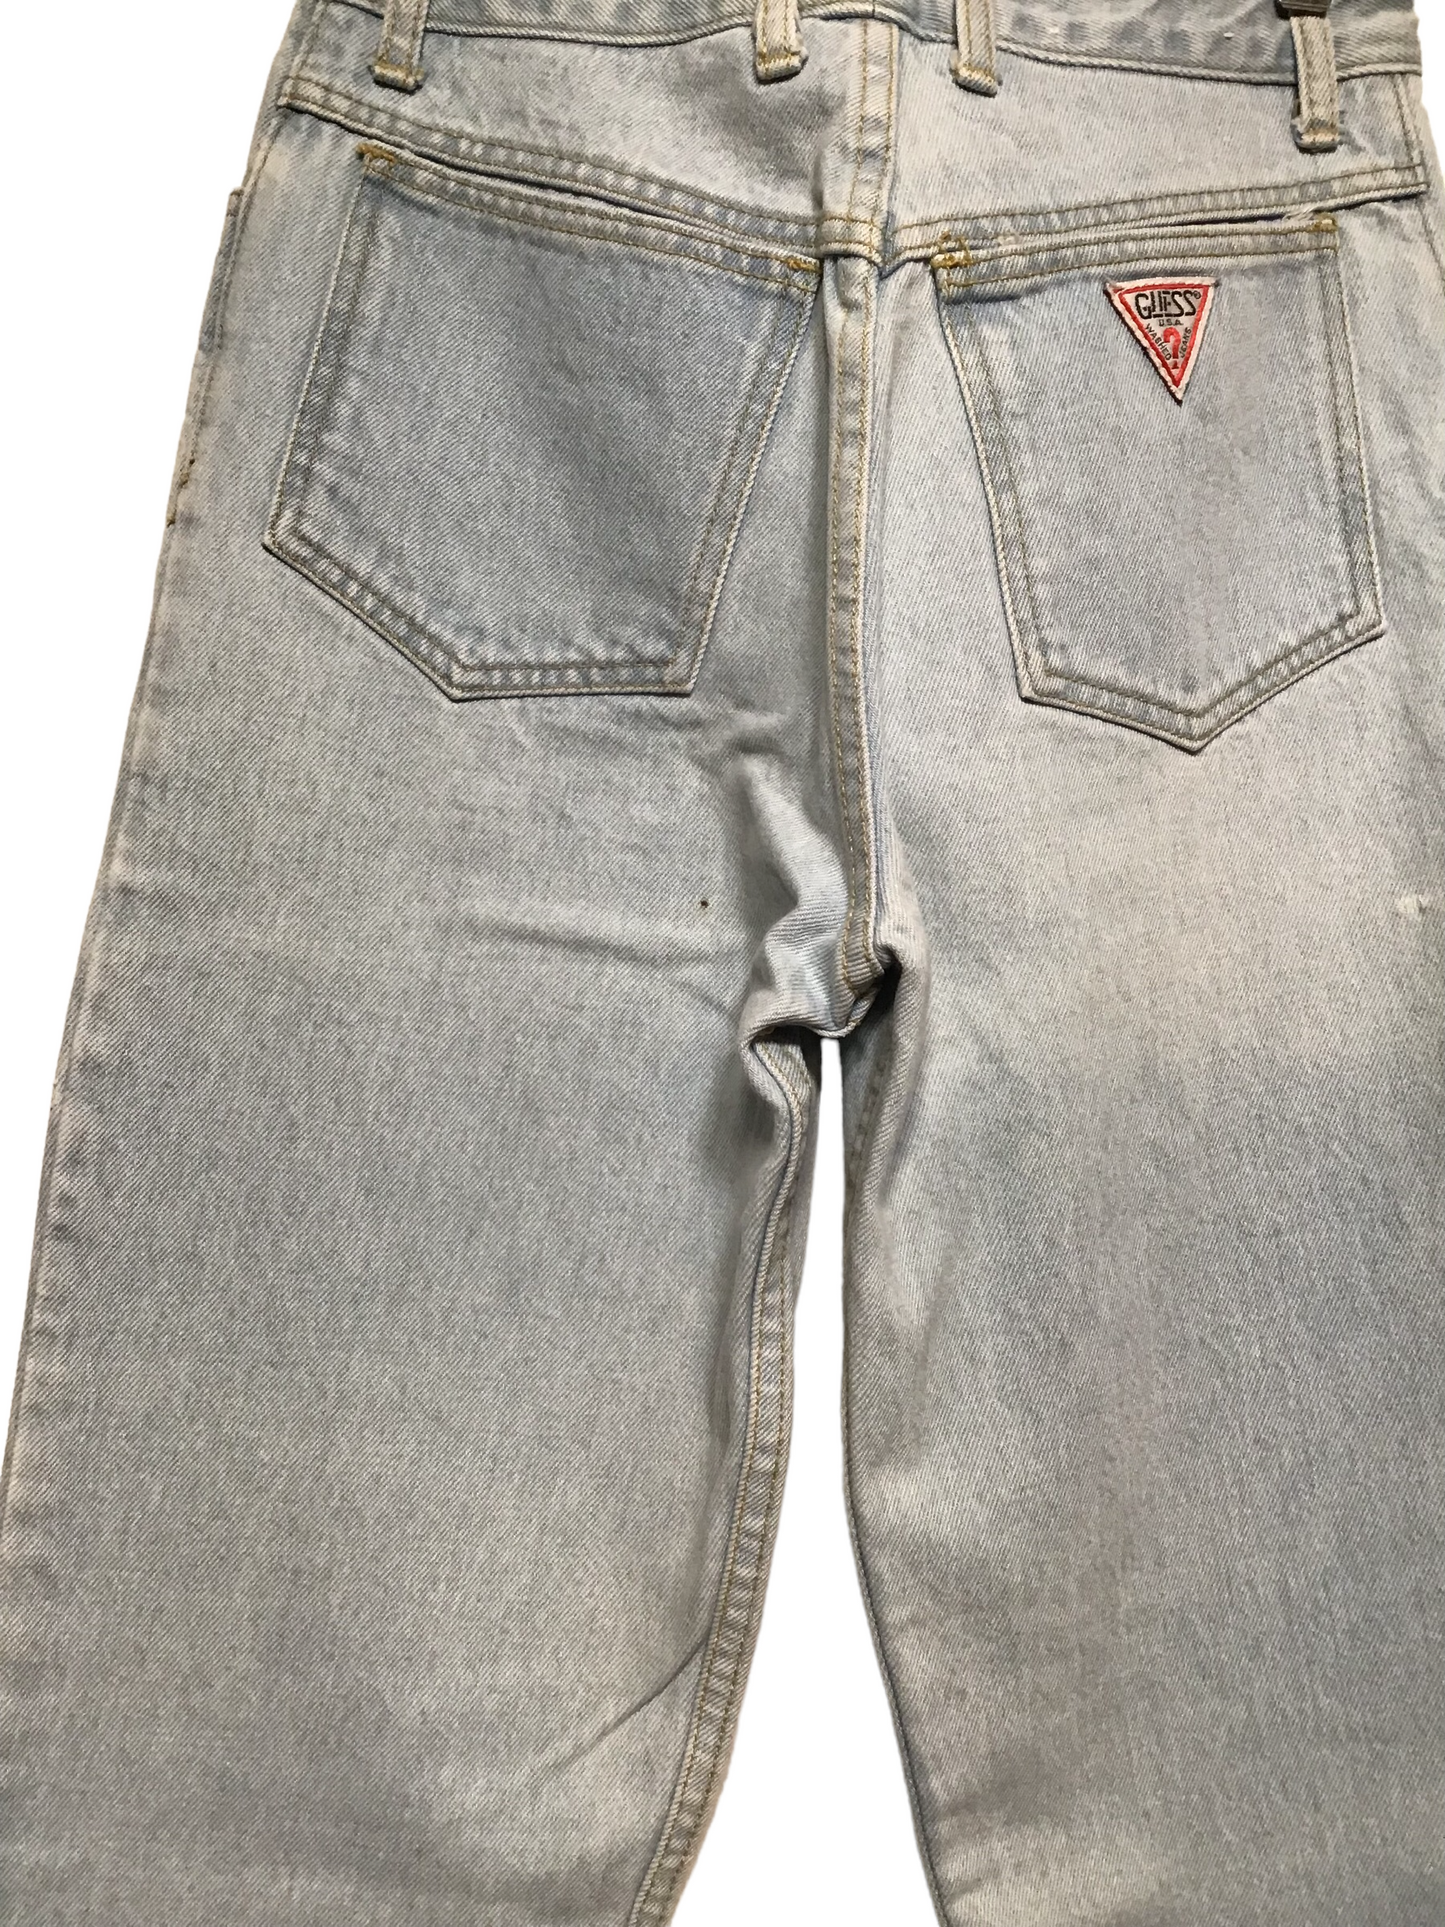 Guess Light Denim Jeans (28X30)